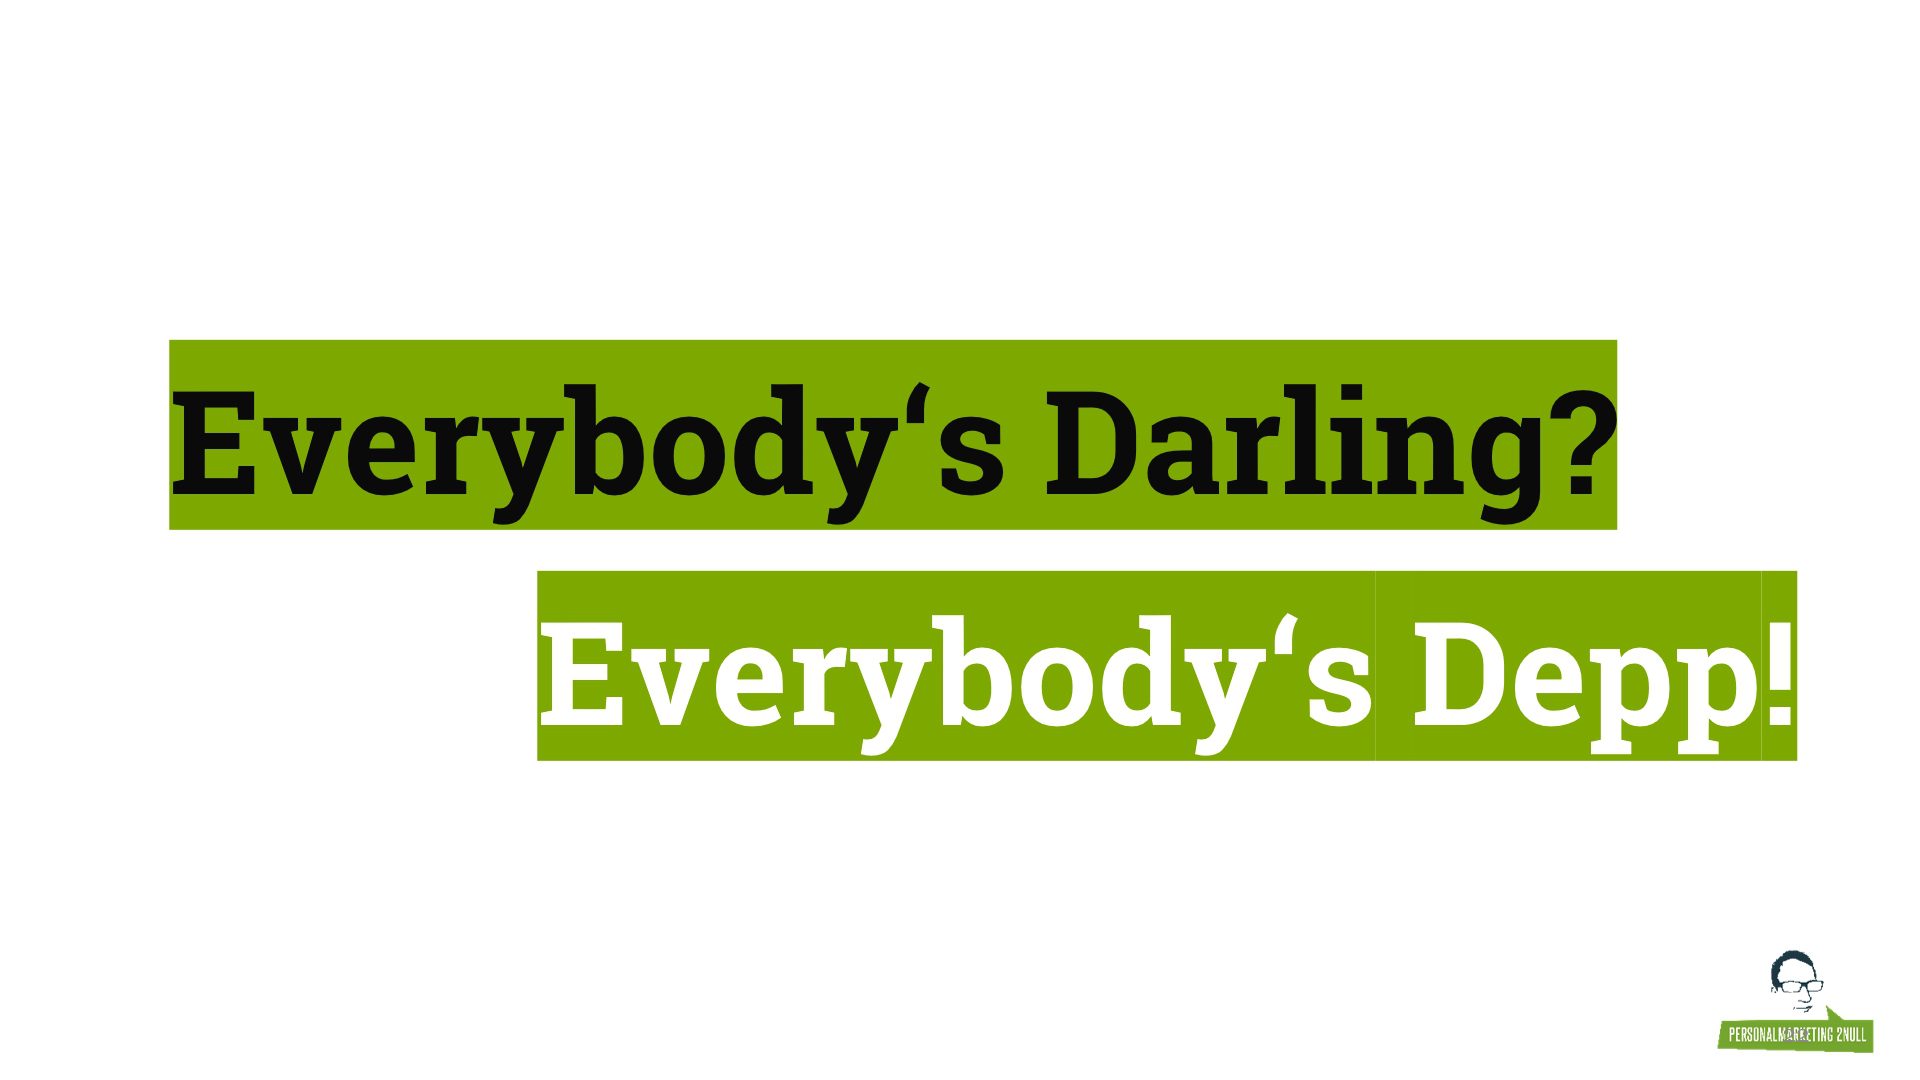 Everybody's Darling is Everybody's Depp - auch im Employer Branding!